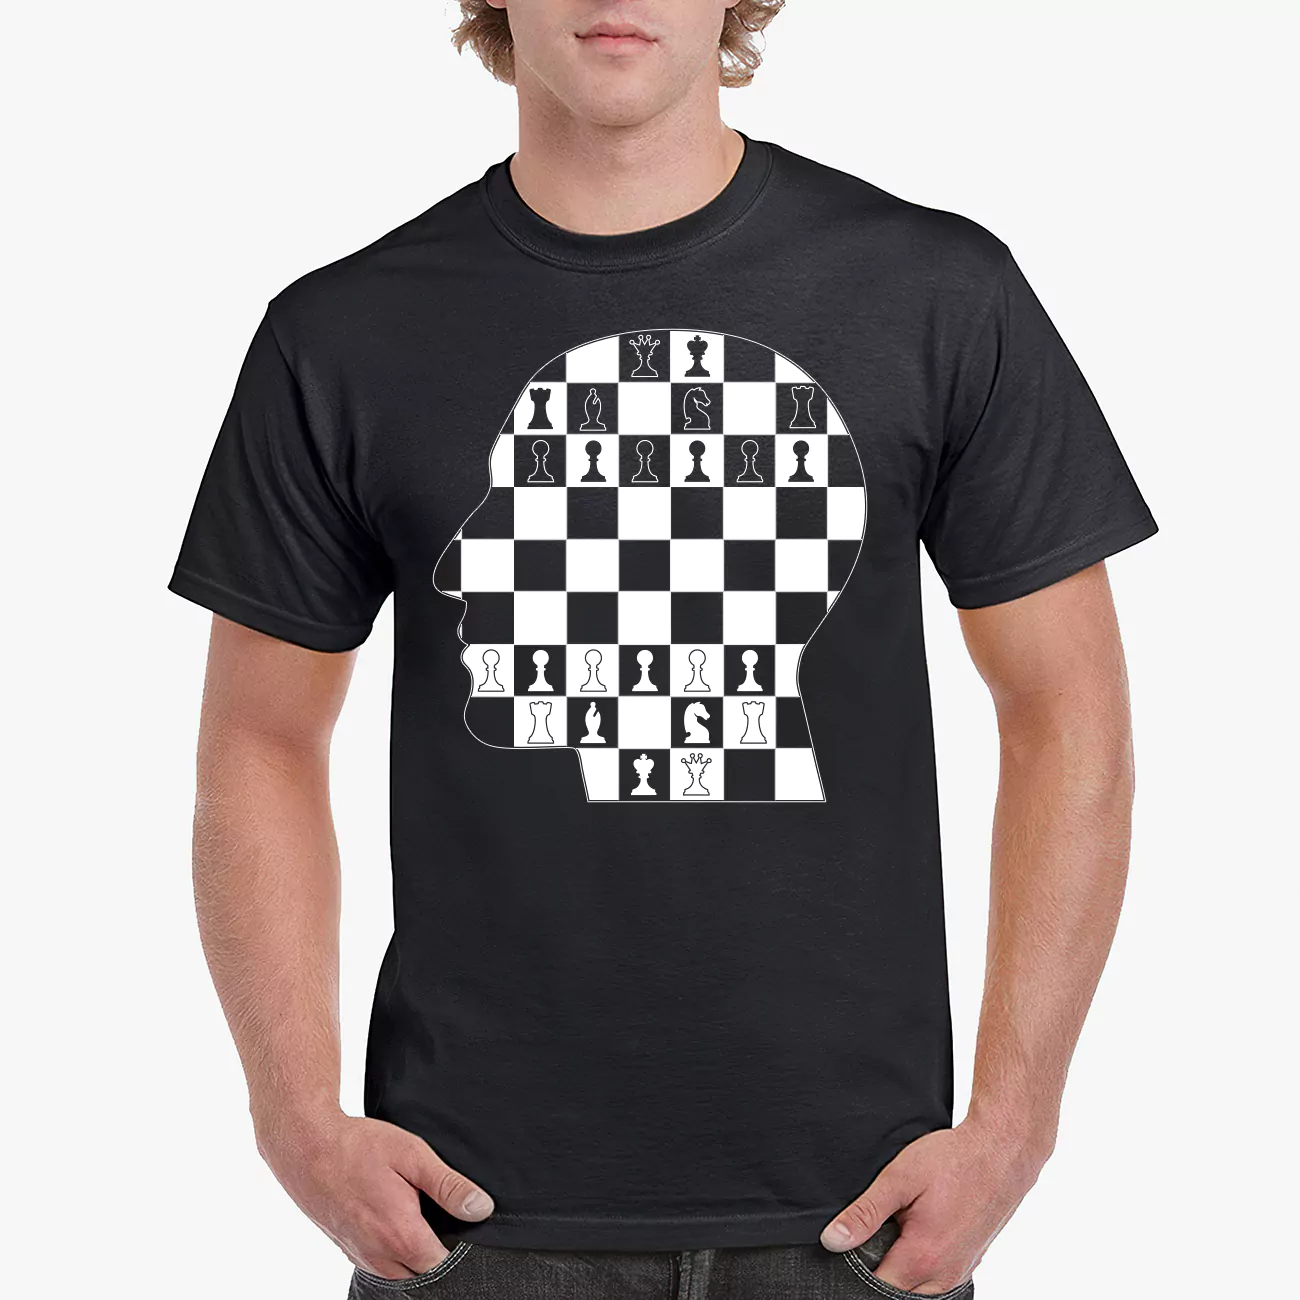 Chess Board Art black tshirt for boys